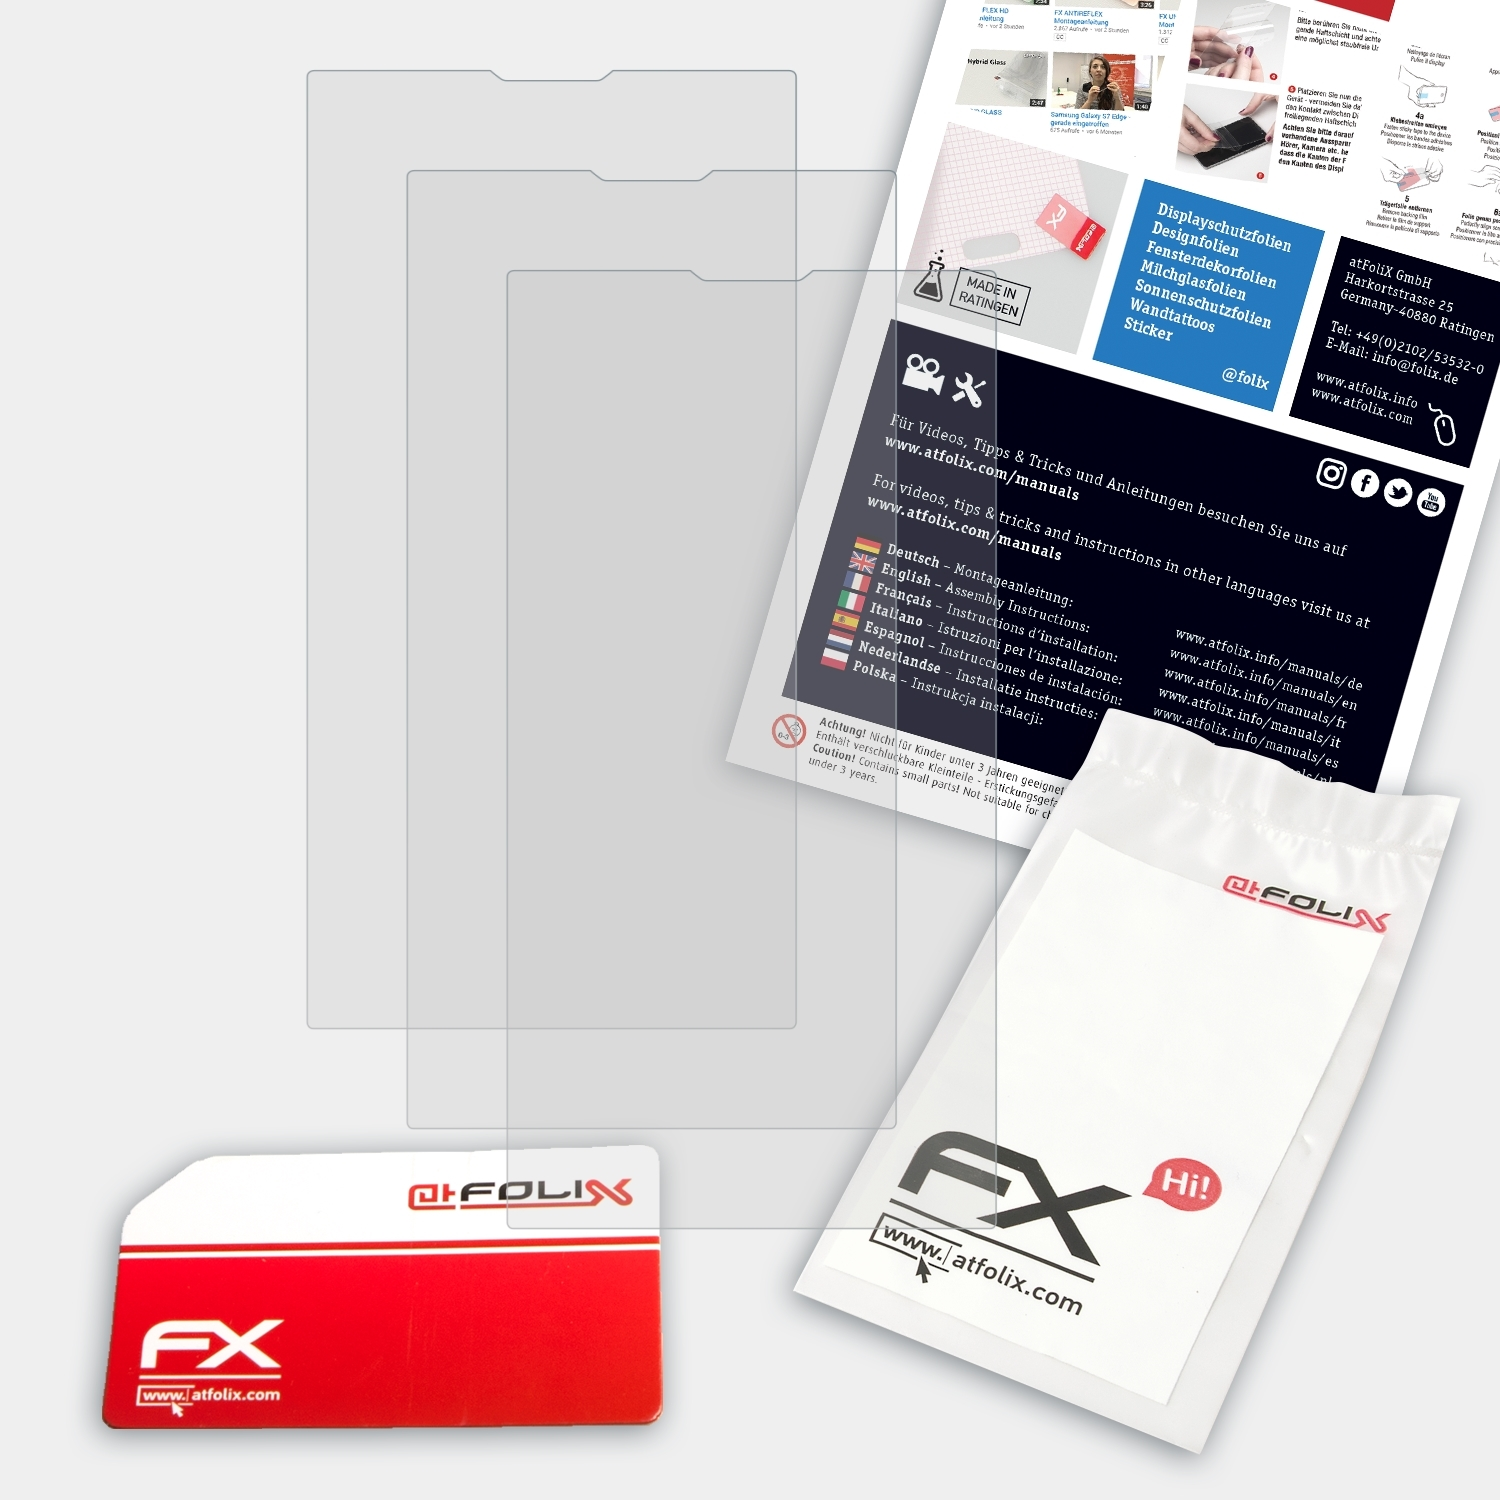 ATFOLIX 3x FX-Antireflex Archos Displayschutz(für Oxygen) 50b